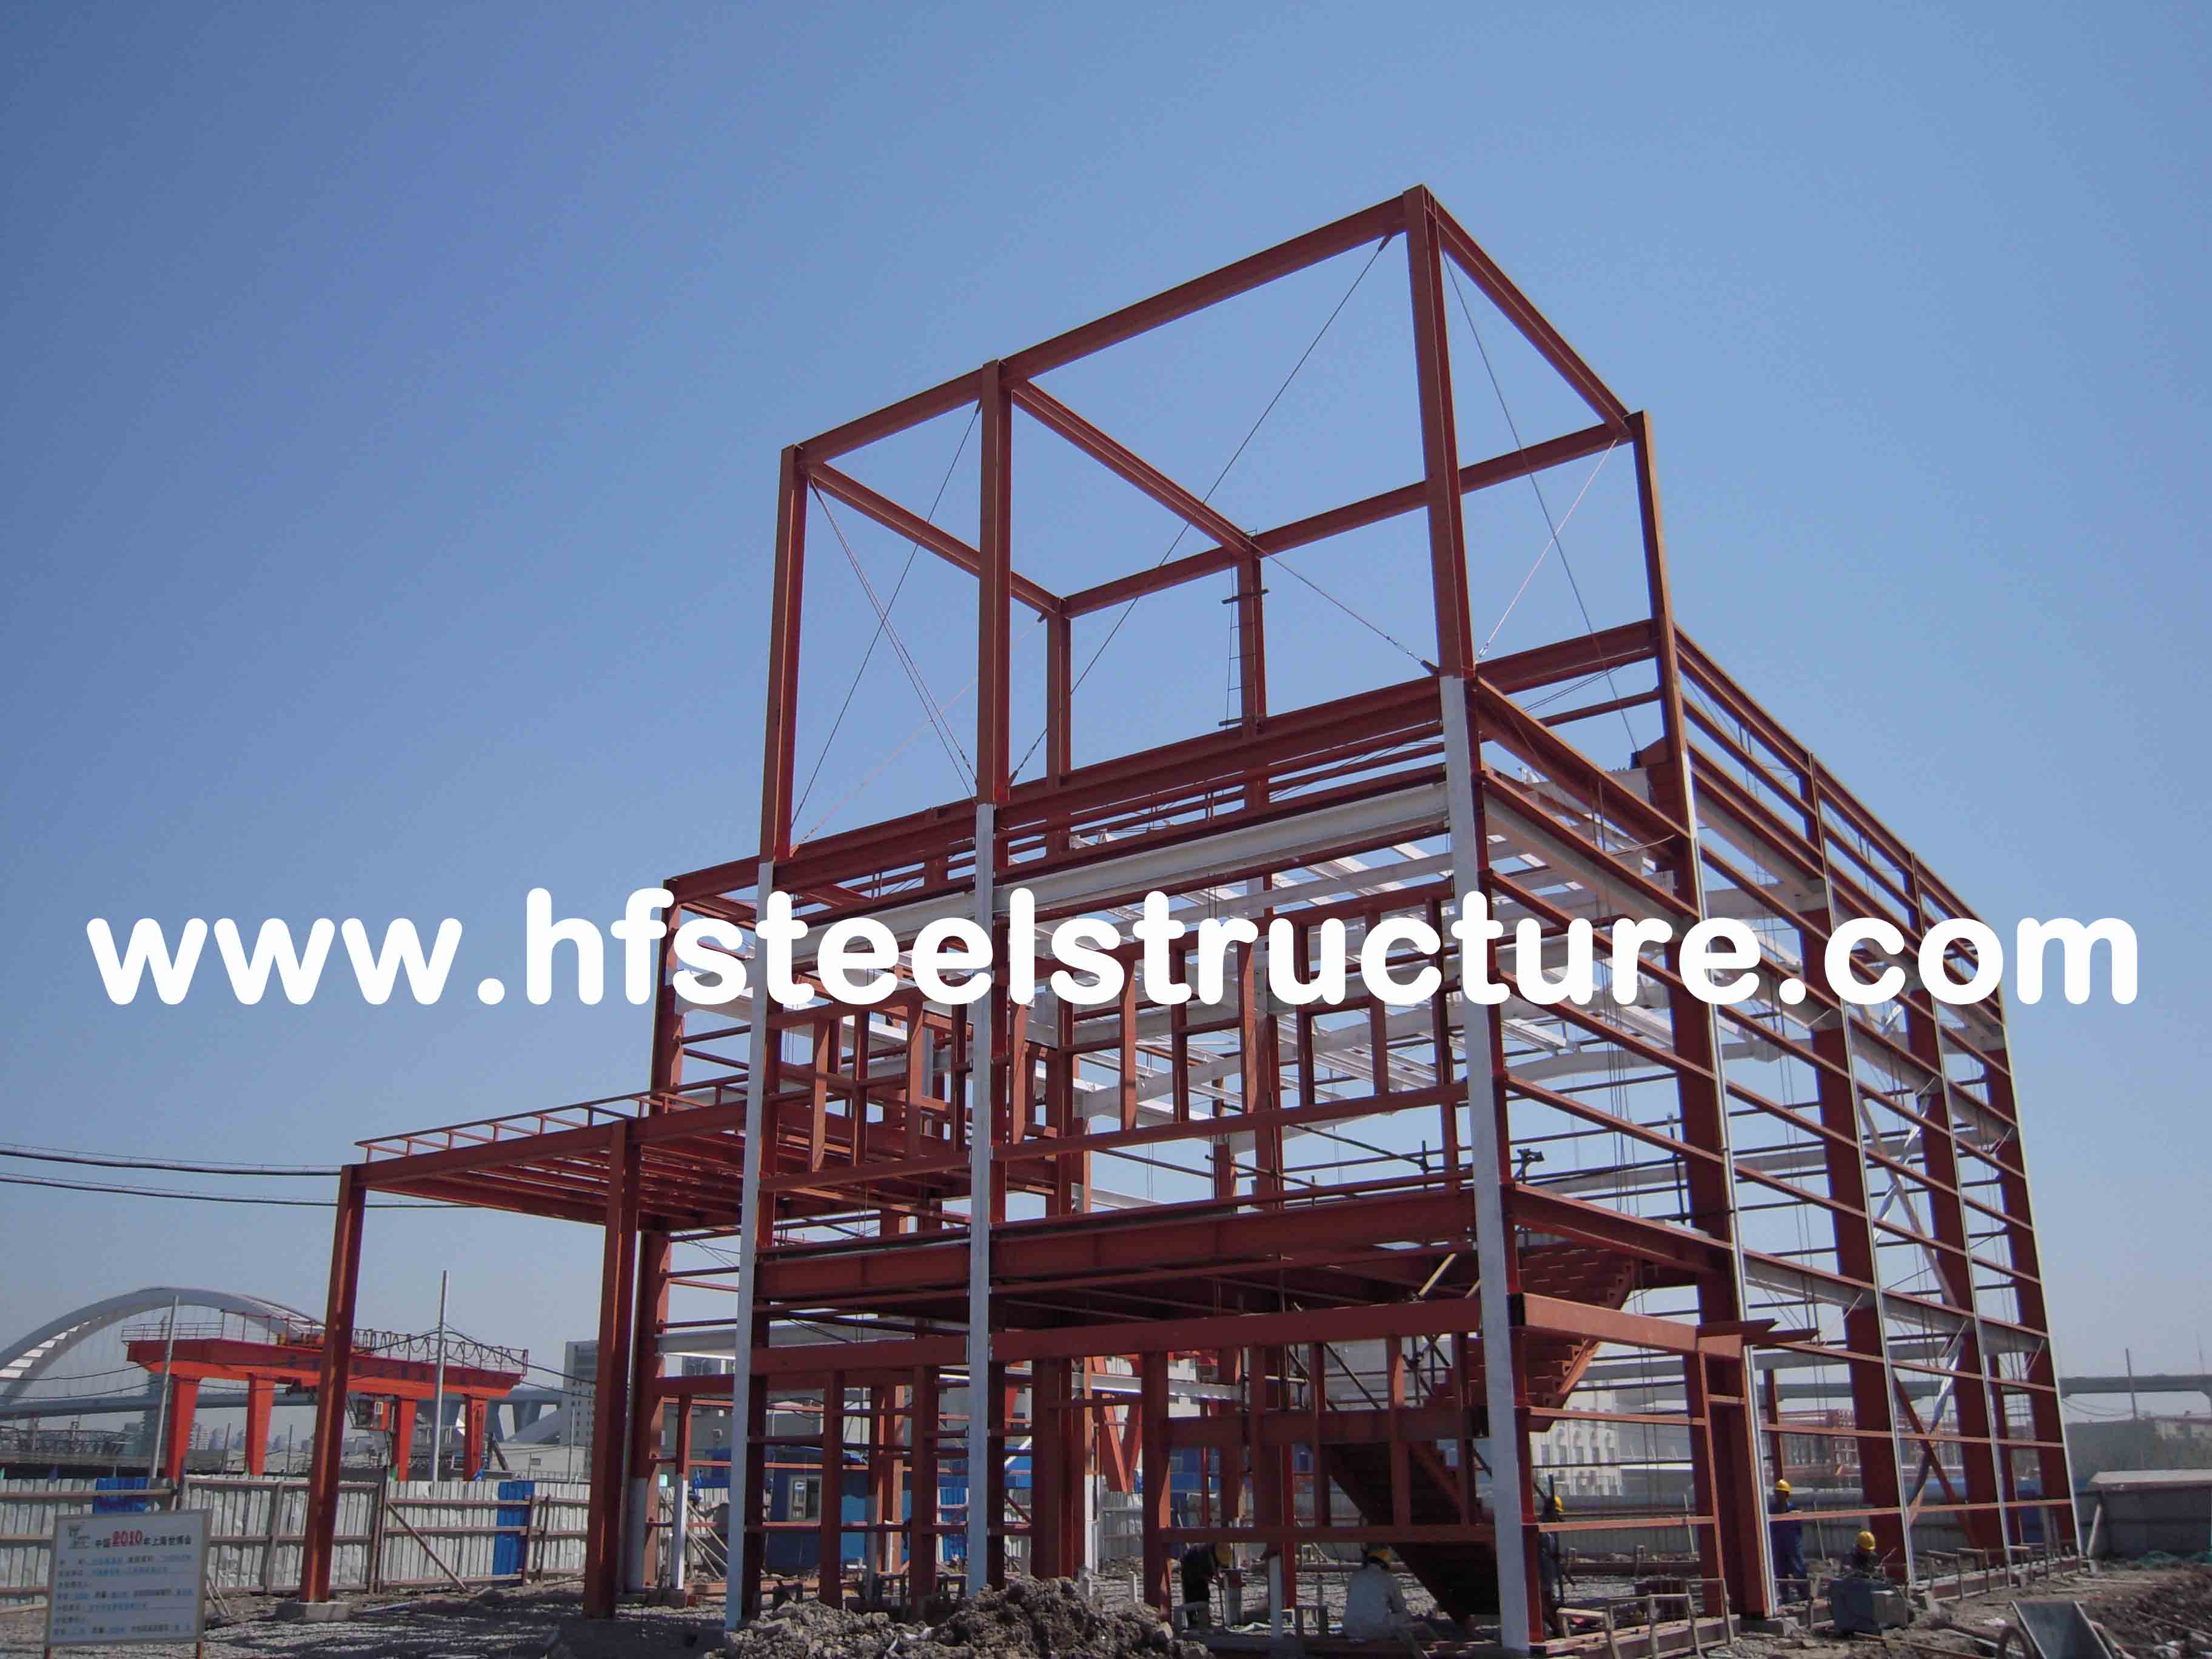 Sawing, Grinding, Pre-Engineered Prefabricated Waterproof Commercial Steel Buildings